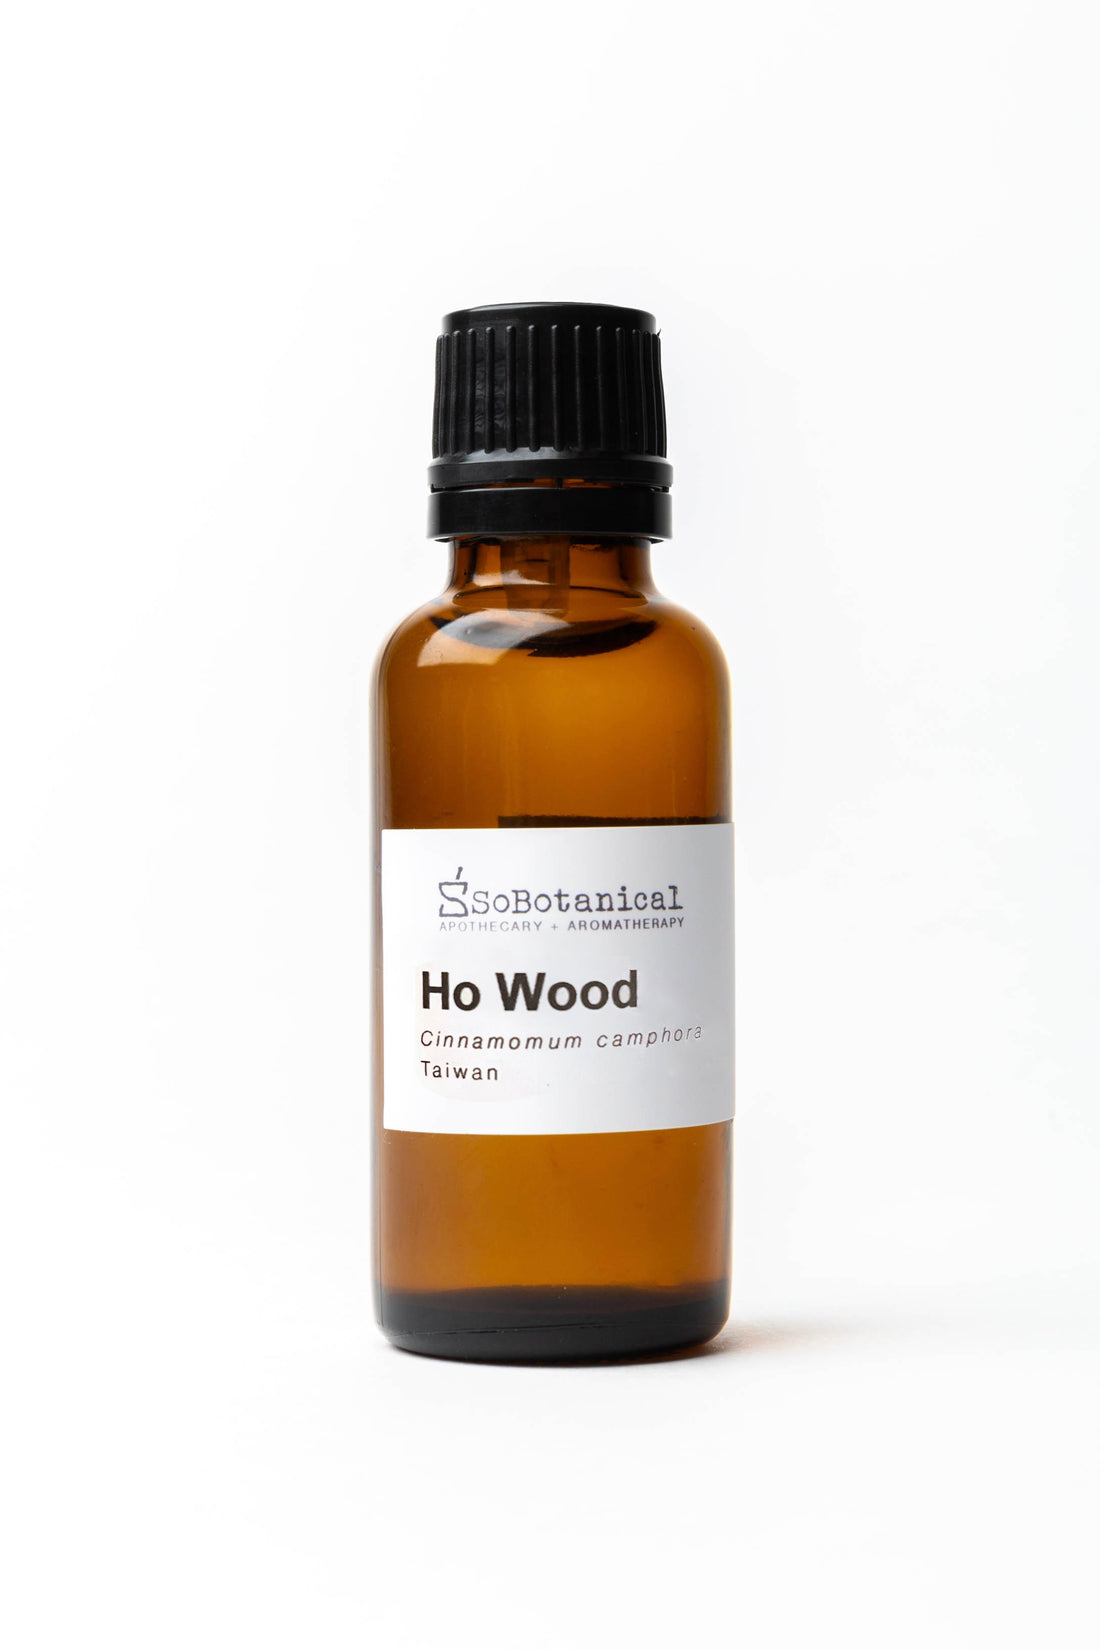 Ho Wood